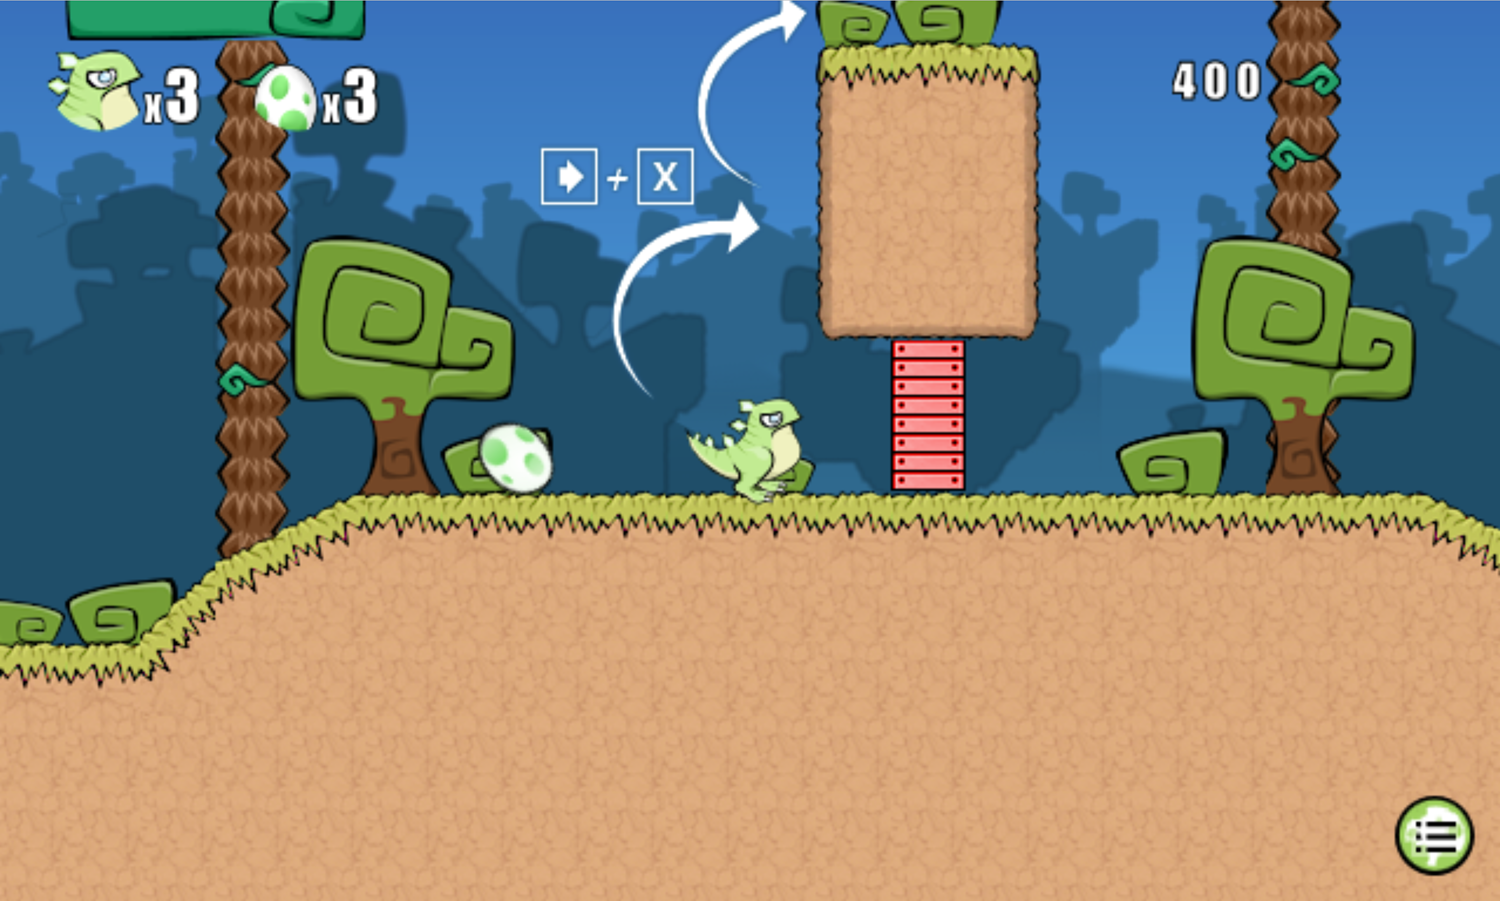 Bugongo Bouncy Jungle Game Wall Climb Instructions Screen Screenshot.